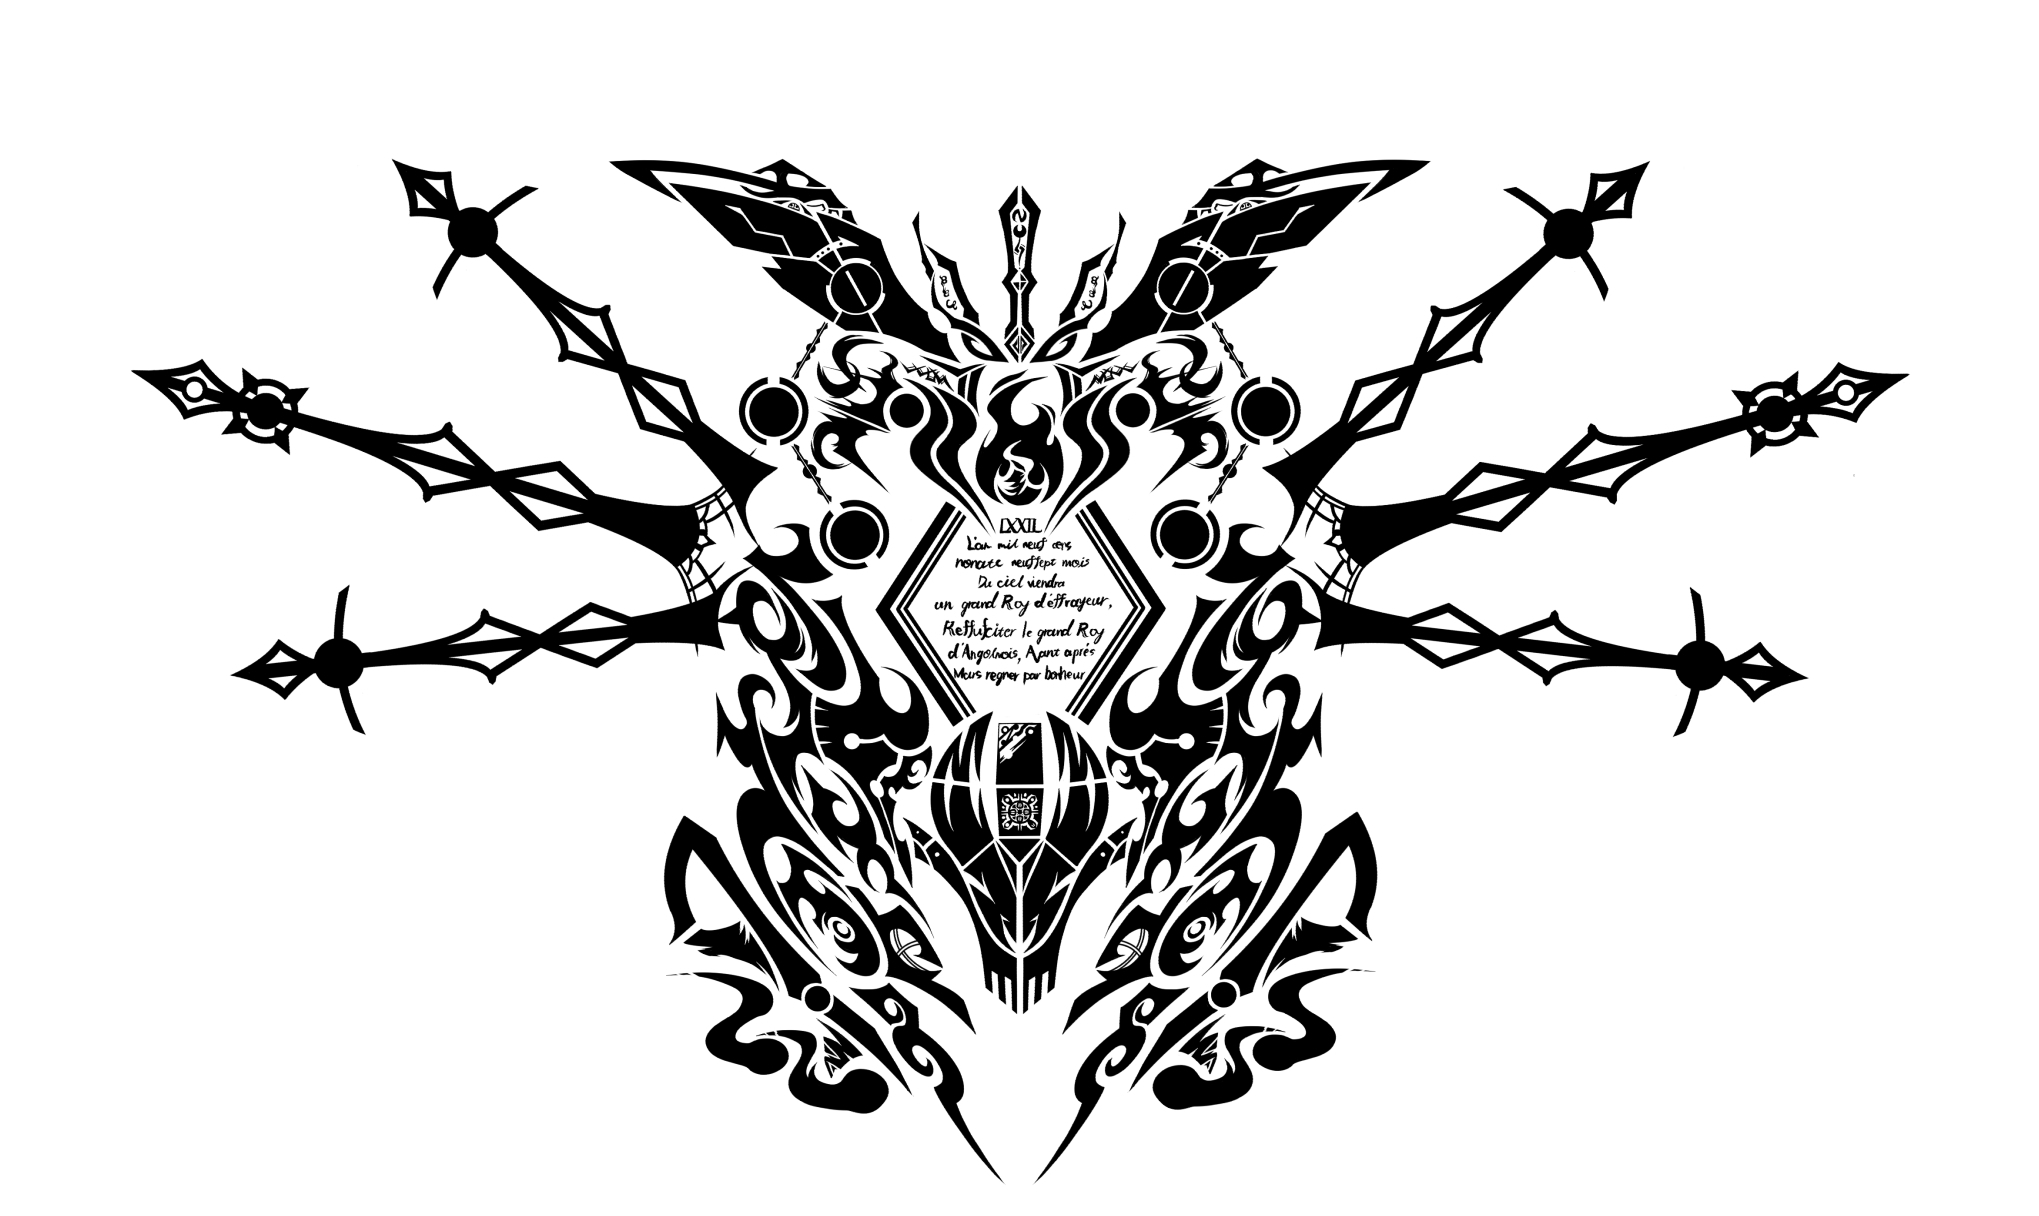 ヌル・ノストラダーの紋章アトリエ